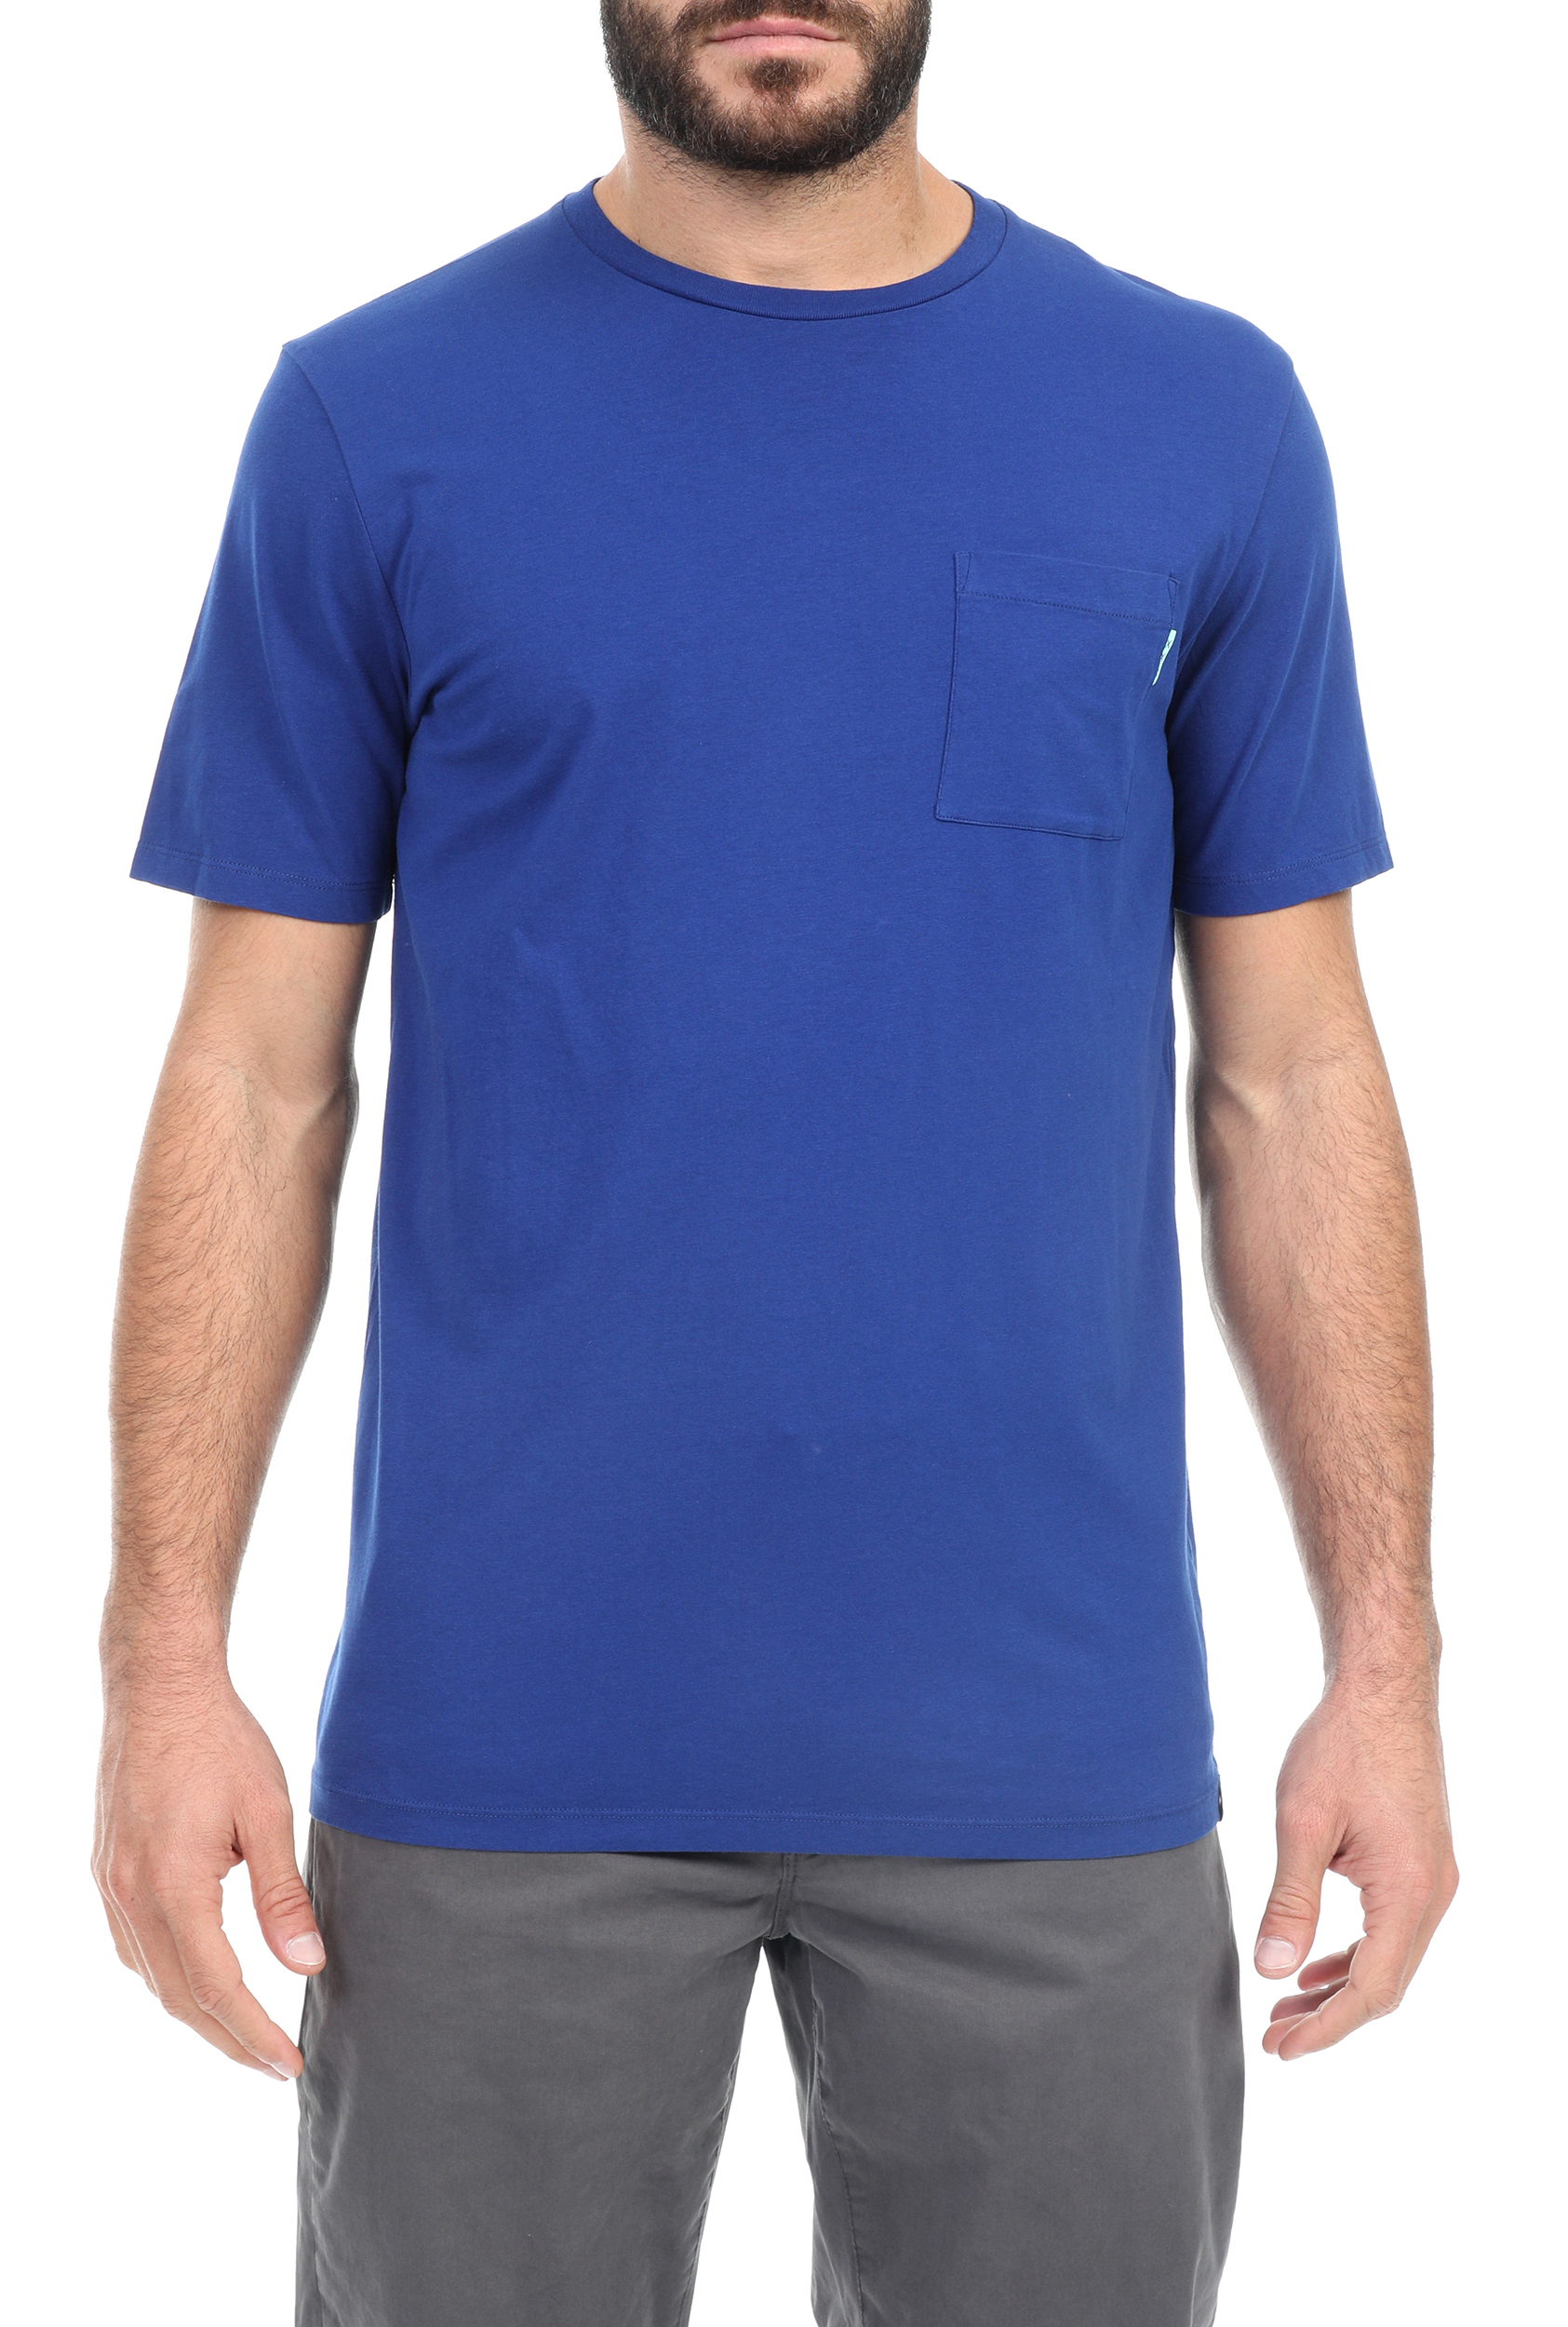 SCOTCH & SODA – Ανδρικο t-shirt SCOTCH & SODA μπλε